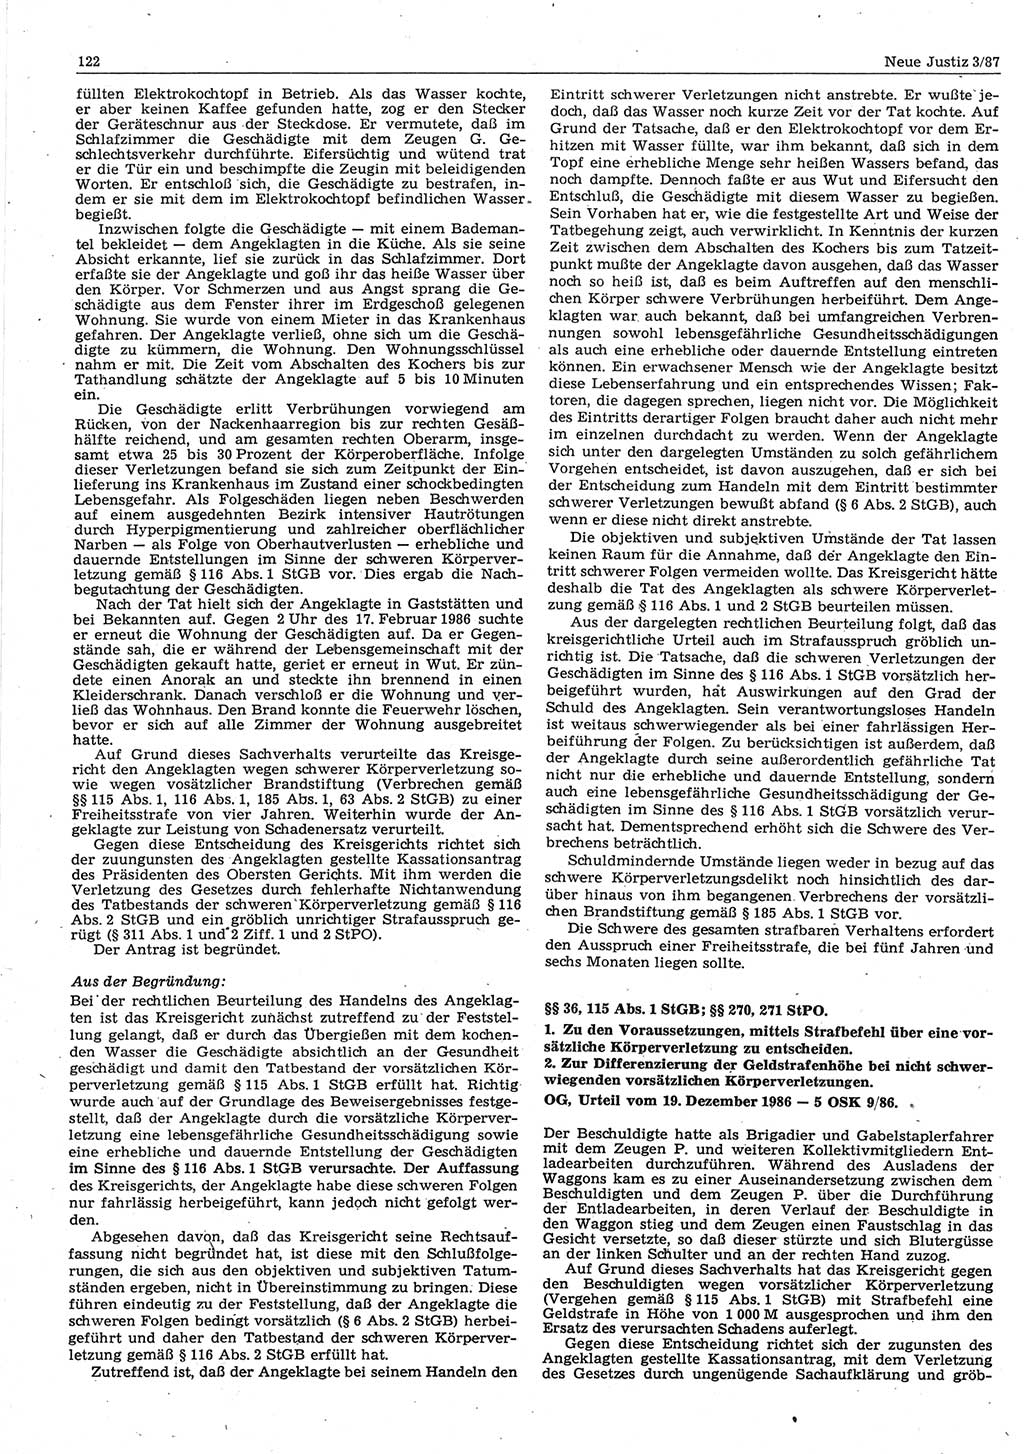 Neue Justiz (NJ), Zeitschrift für sozialistisches Recht und Gesetzlichkeit [Deutsche Demokratische Republik (DDR)], 41. Jahrgang 1987, Seite 122 (NJ DDR 1987, S. 122)